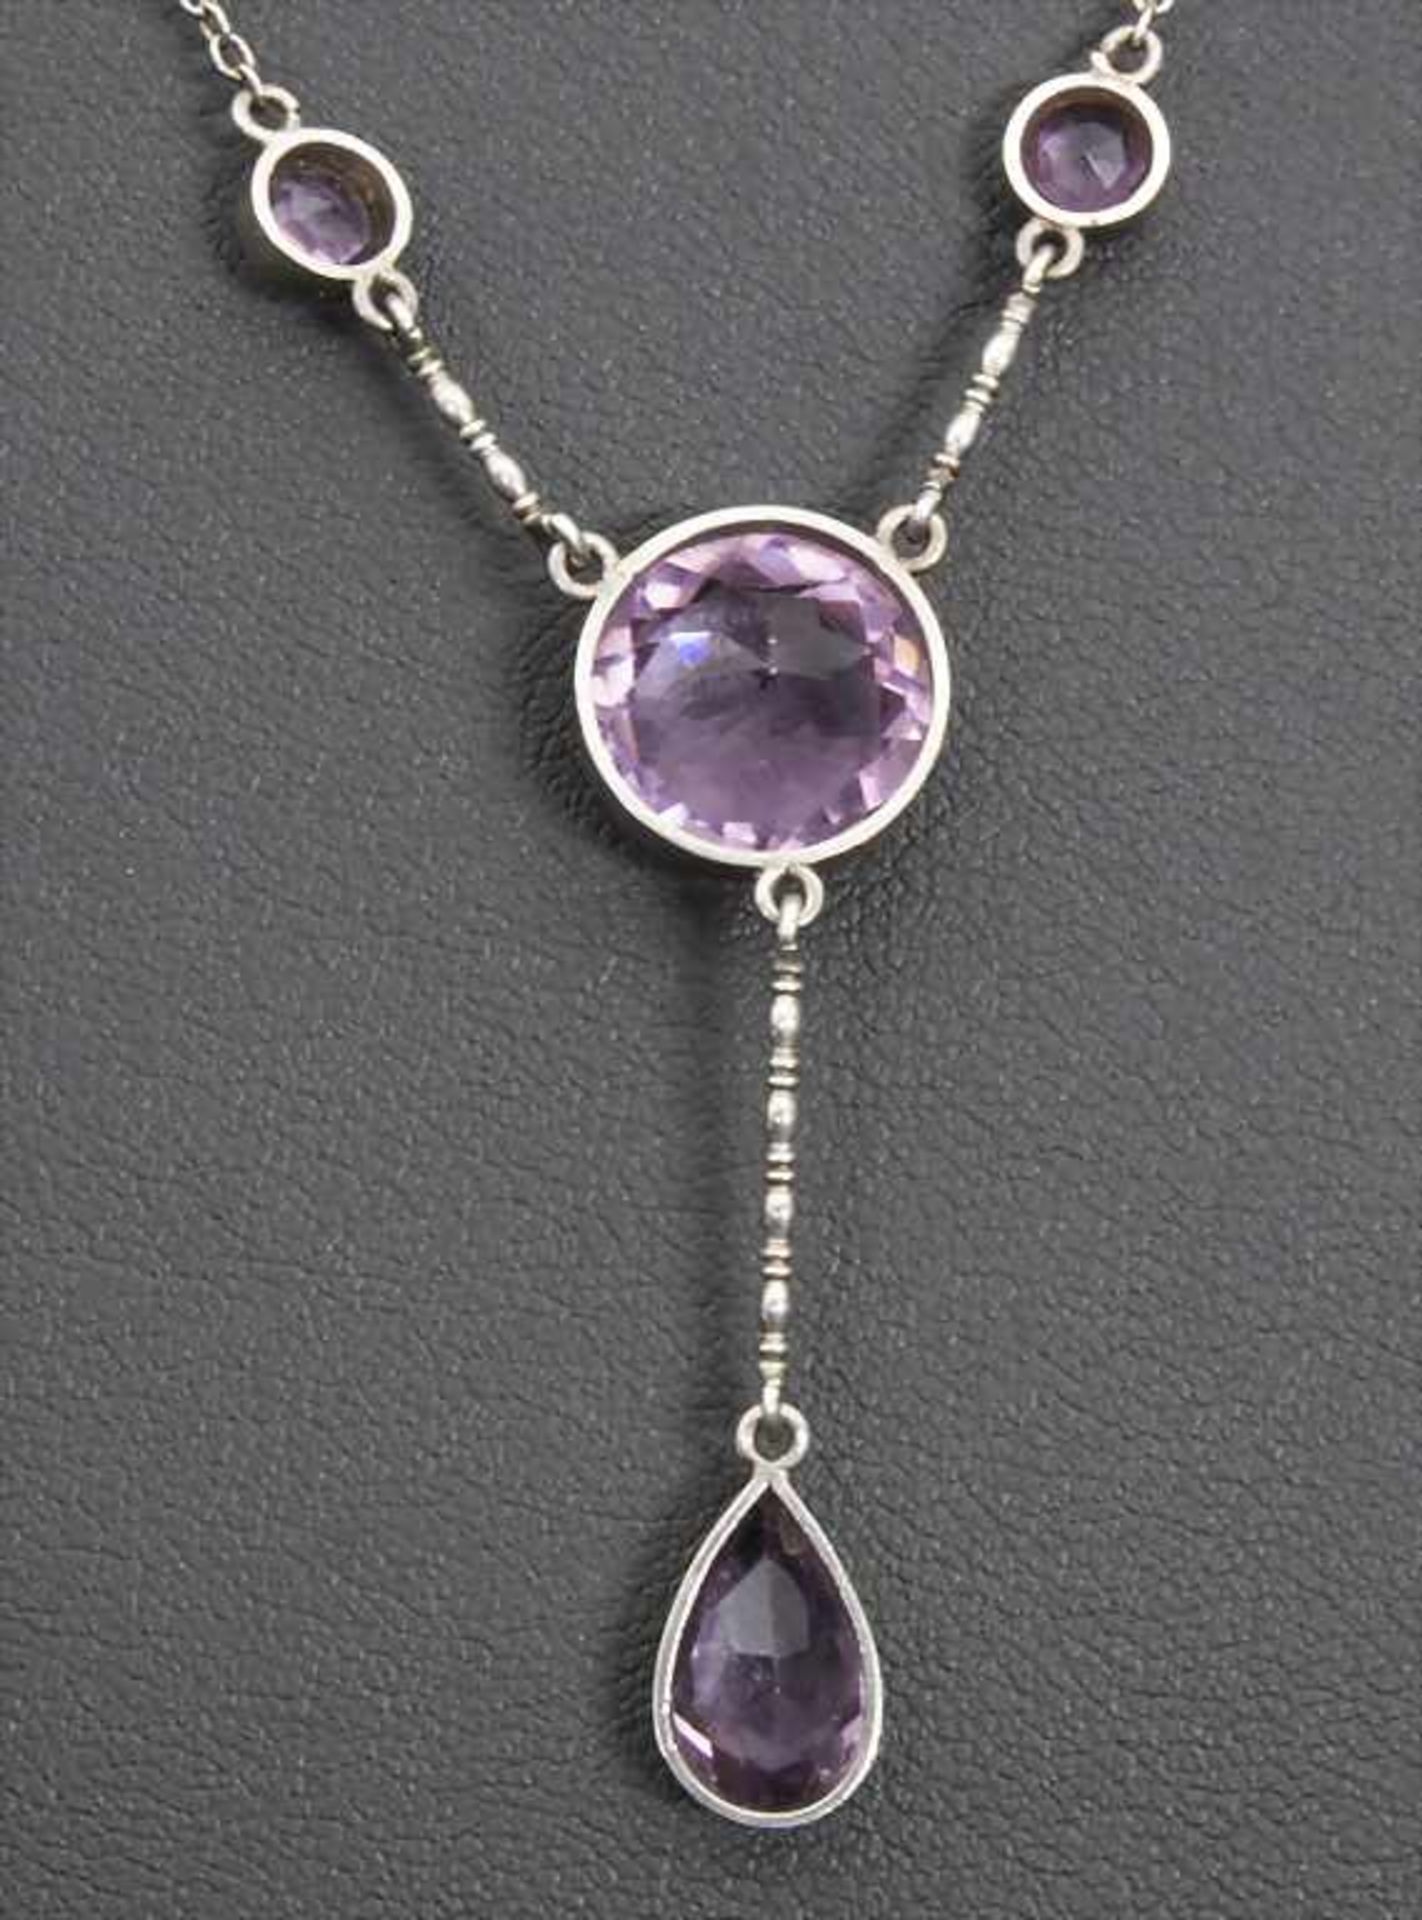 Jugendstil Silber Collier / An Art Nouveau silver necklace - Image 3 of 3